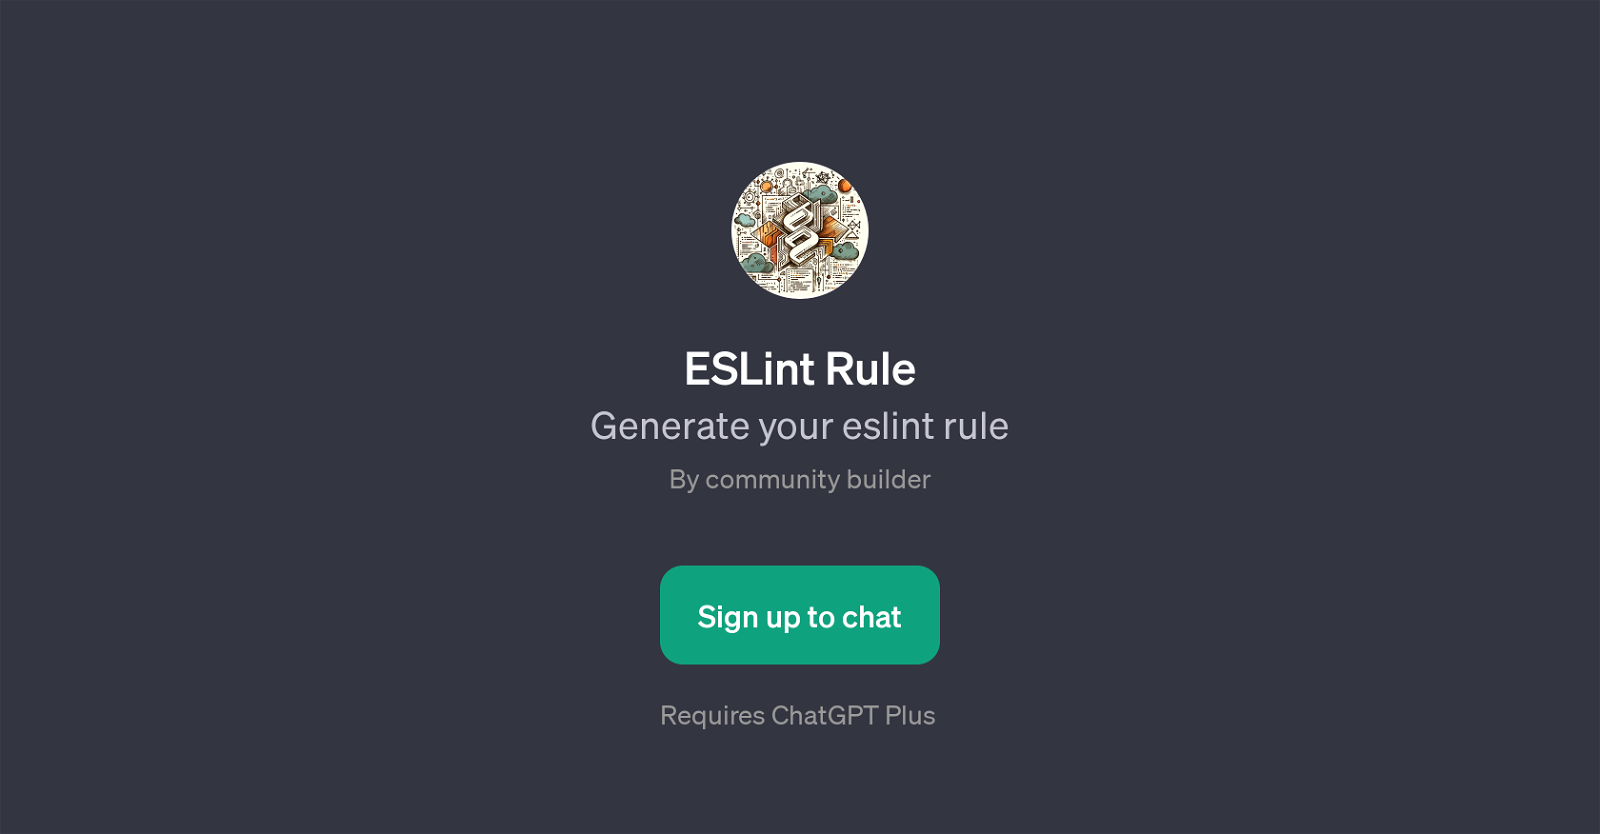 ESLint Rule website